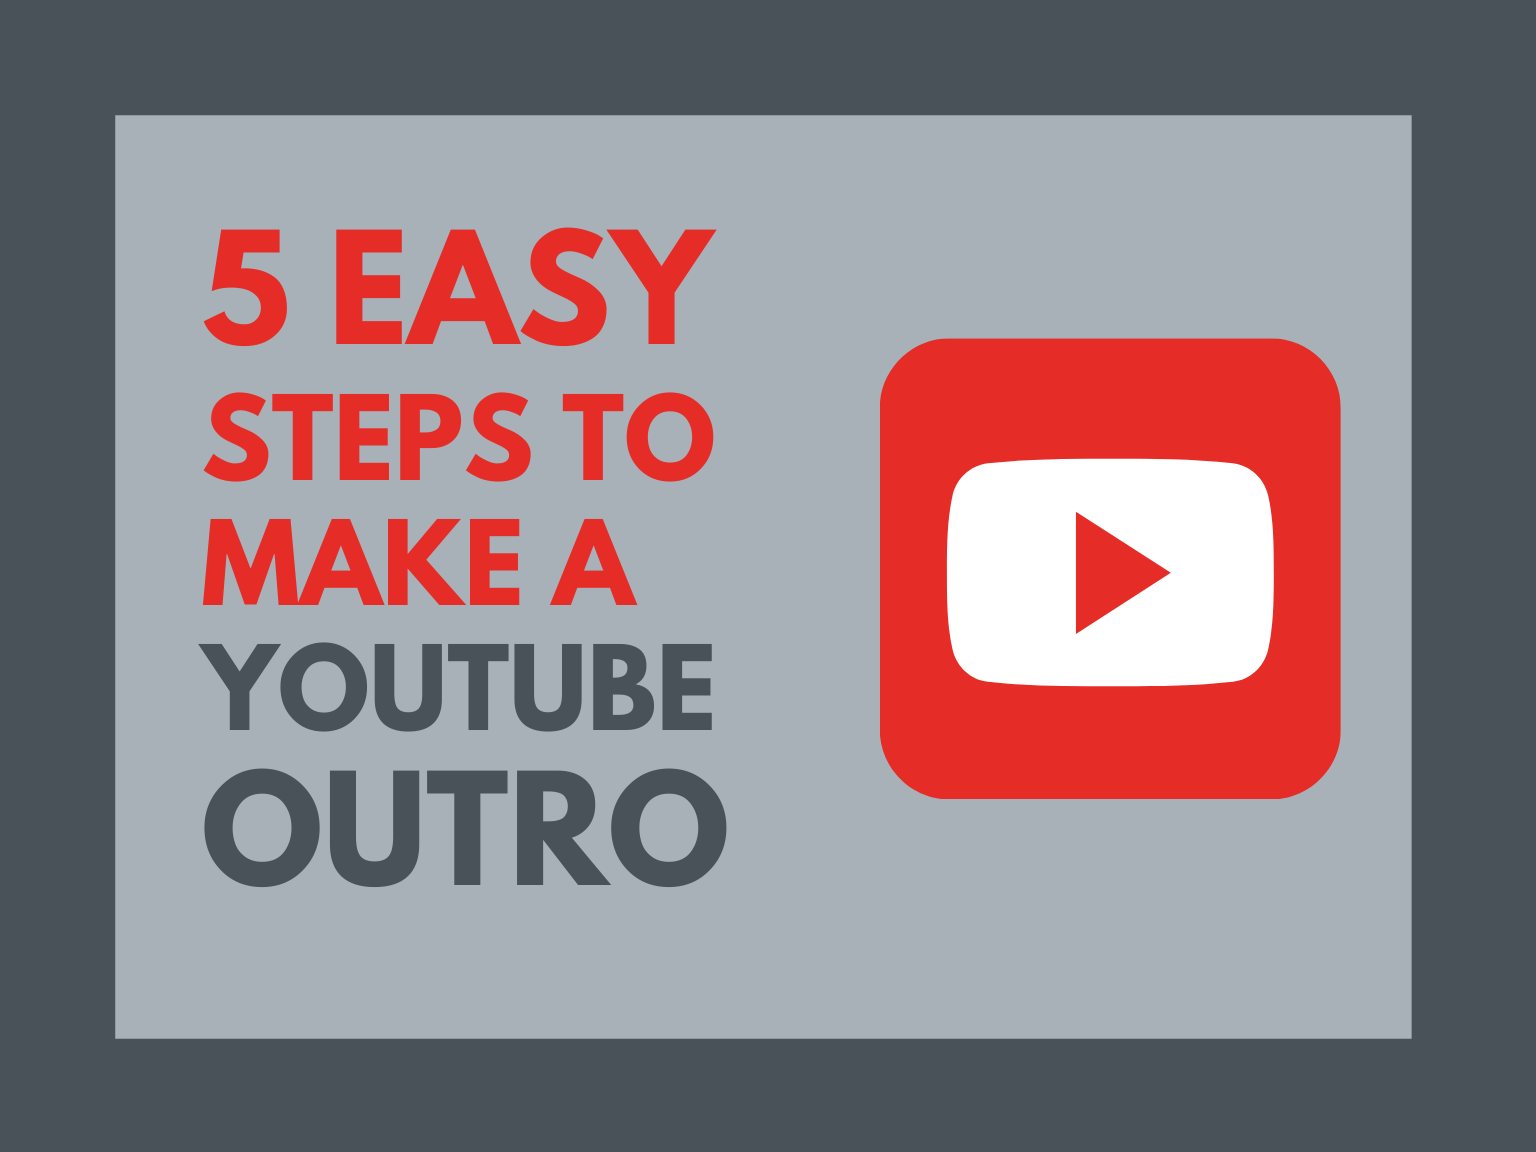 Tạo hậu trường YouTube Outro sẽ giúp cho video của bạn trở nên chuyên nghiệp và thu hút hơn. Bạn sẽ được áp dụng nhiều hiệu ứng và âm thanh hấp dẫn để hoàn thiện video. Hãy quan tâm đến những chi tiết nhỏ và tạo ra hậu trường đầy sáng tạo cho kênh YouTube của bạn. 